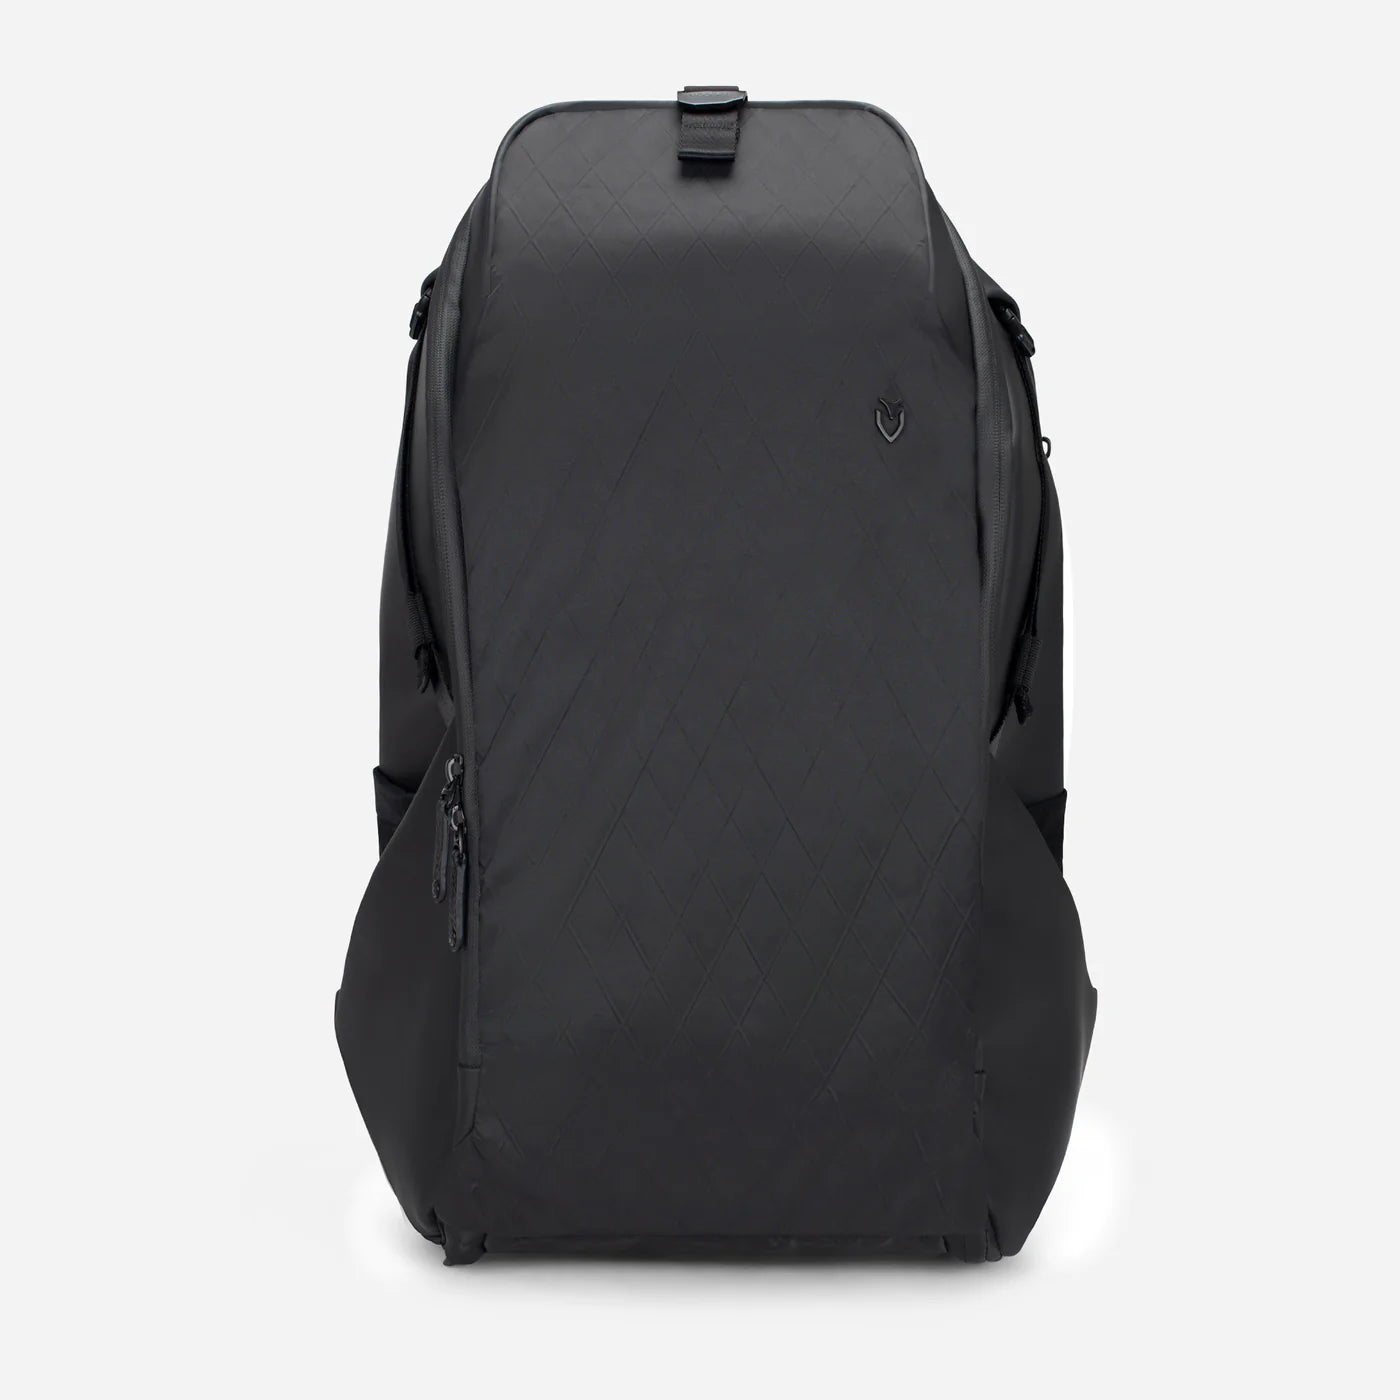 PrimeX Plus DXR Backpack